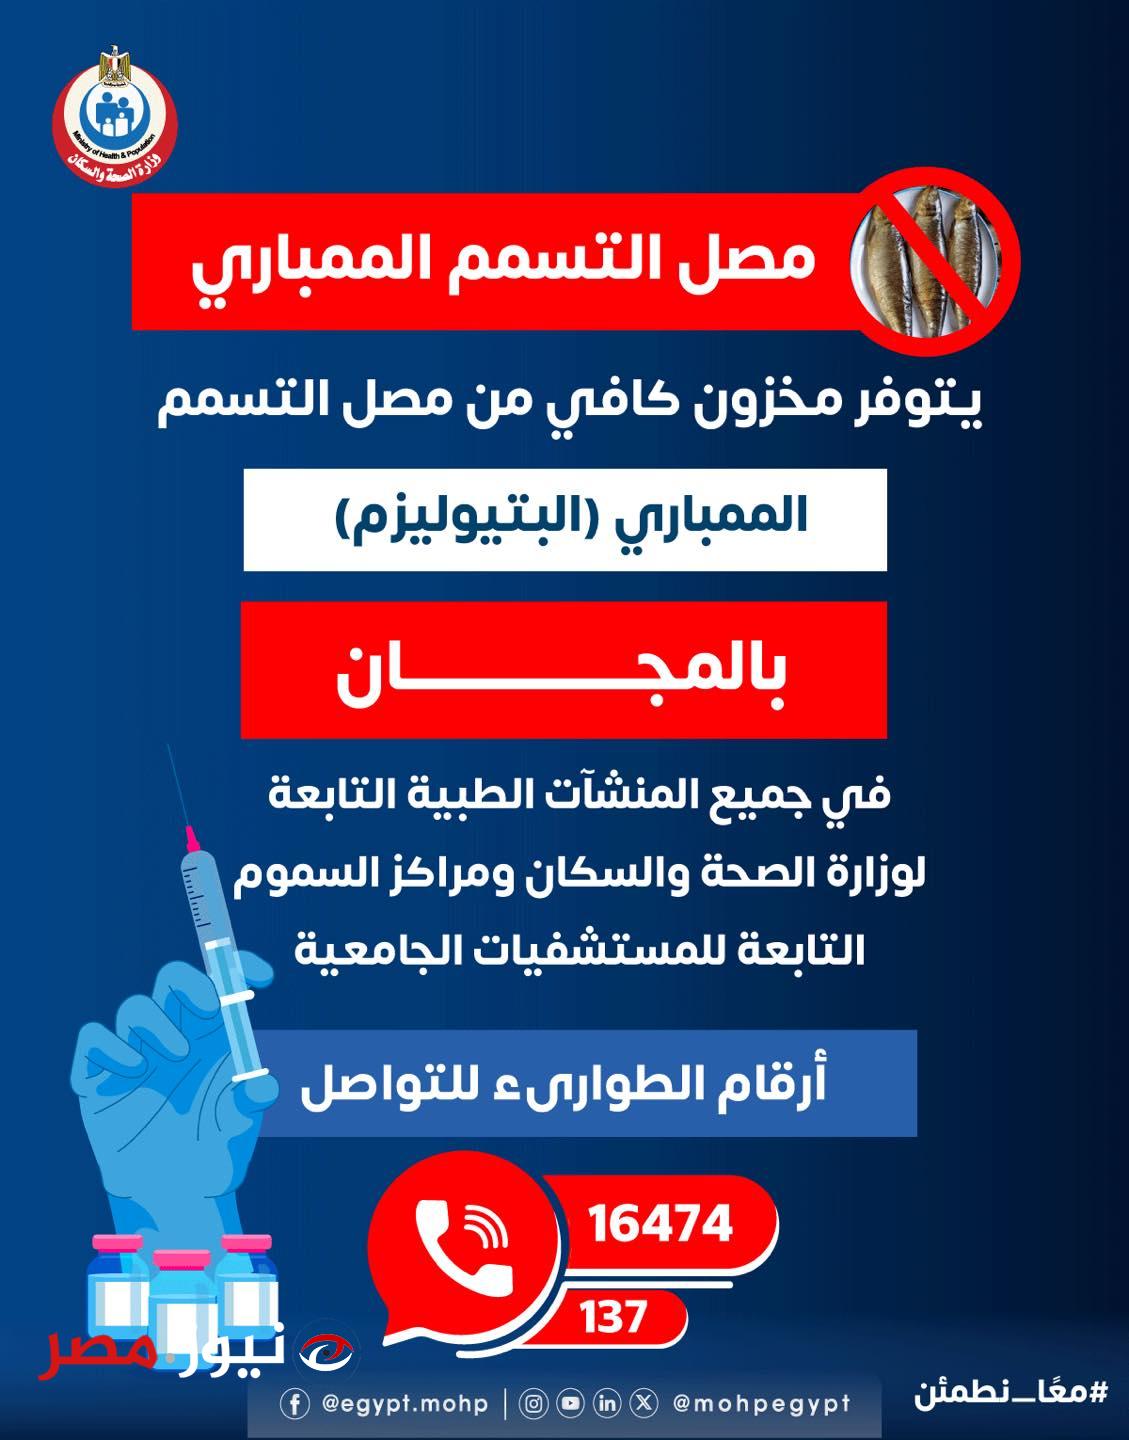 وزارة الصحة والسكان تعلن عن توافر مصل التسمم الممباري